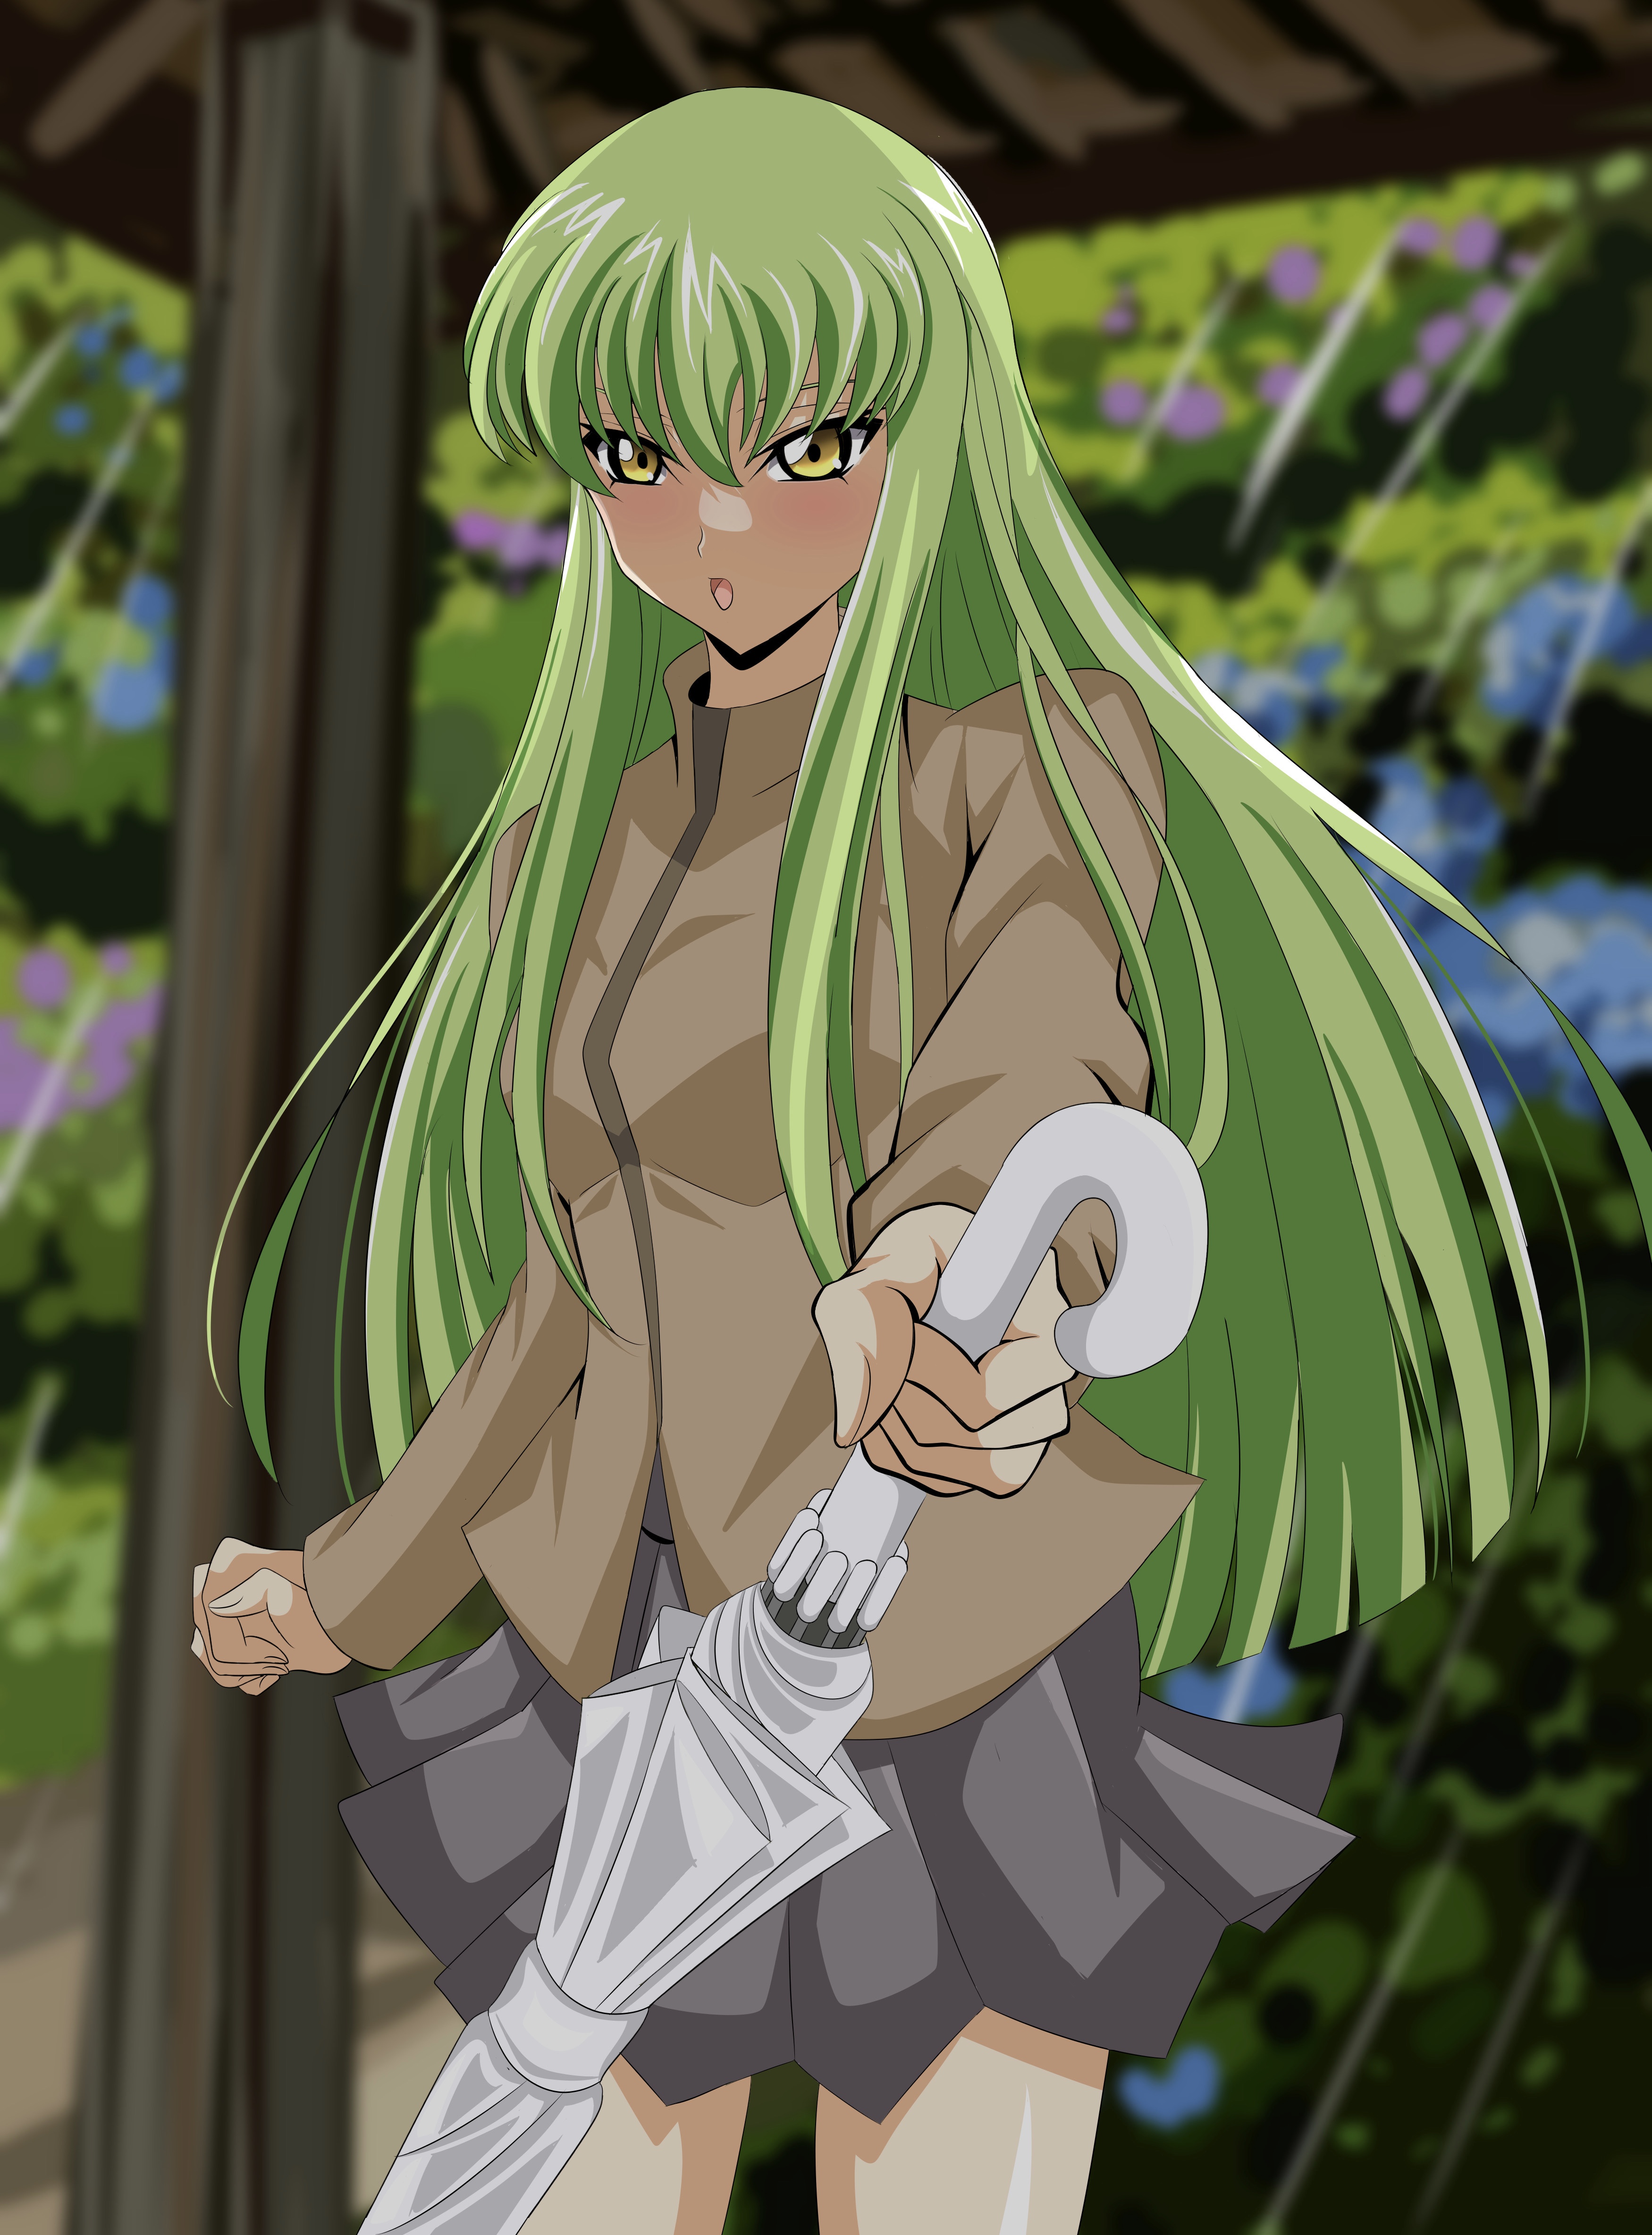 Anime 3500x4735 anime anime girls Code Geass C.C. (Code Geass) long hair green hair artwork digital art fan art